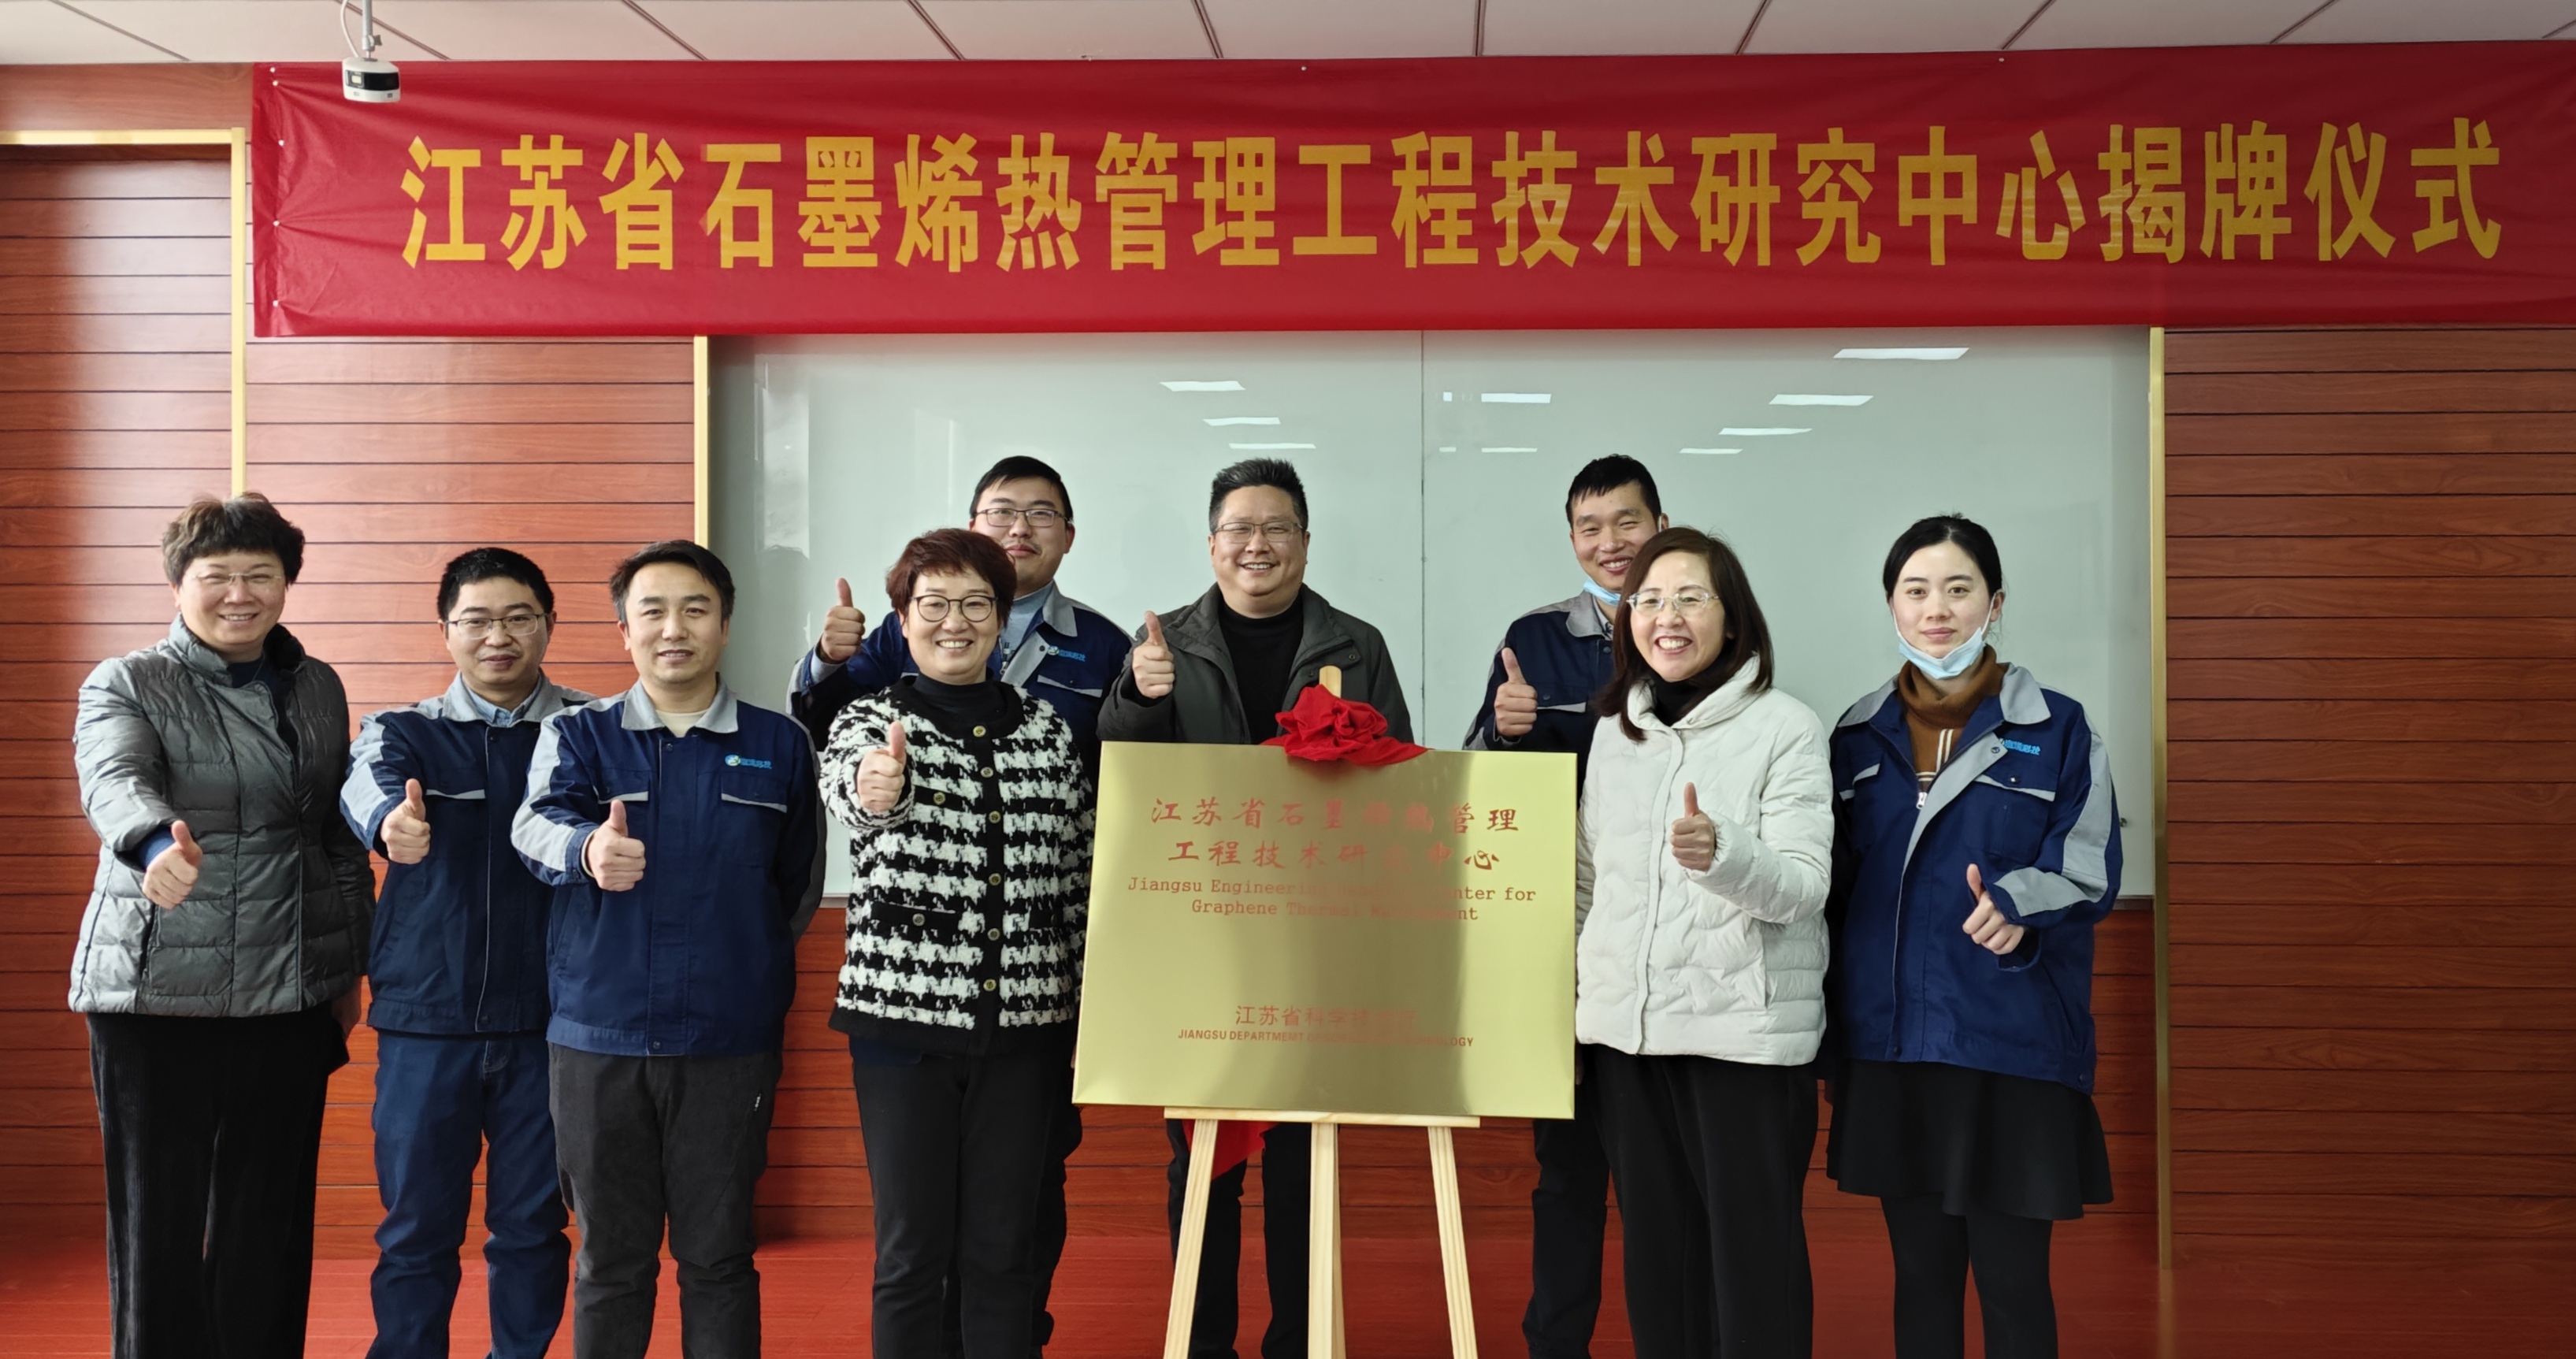 常州富烯科技股份有限公司“江苏省石墨烯热管理工程技术研究中心”揭牌